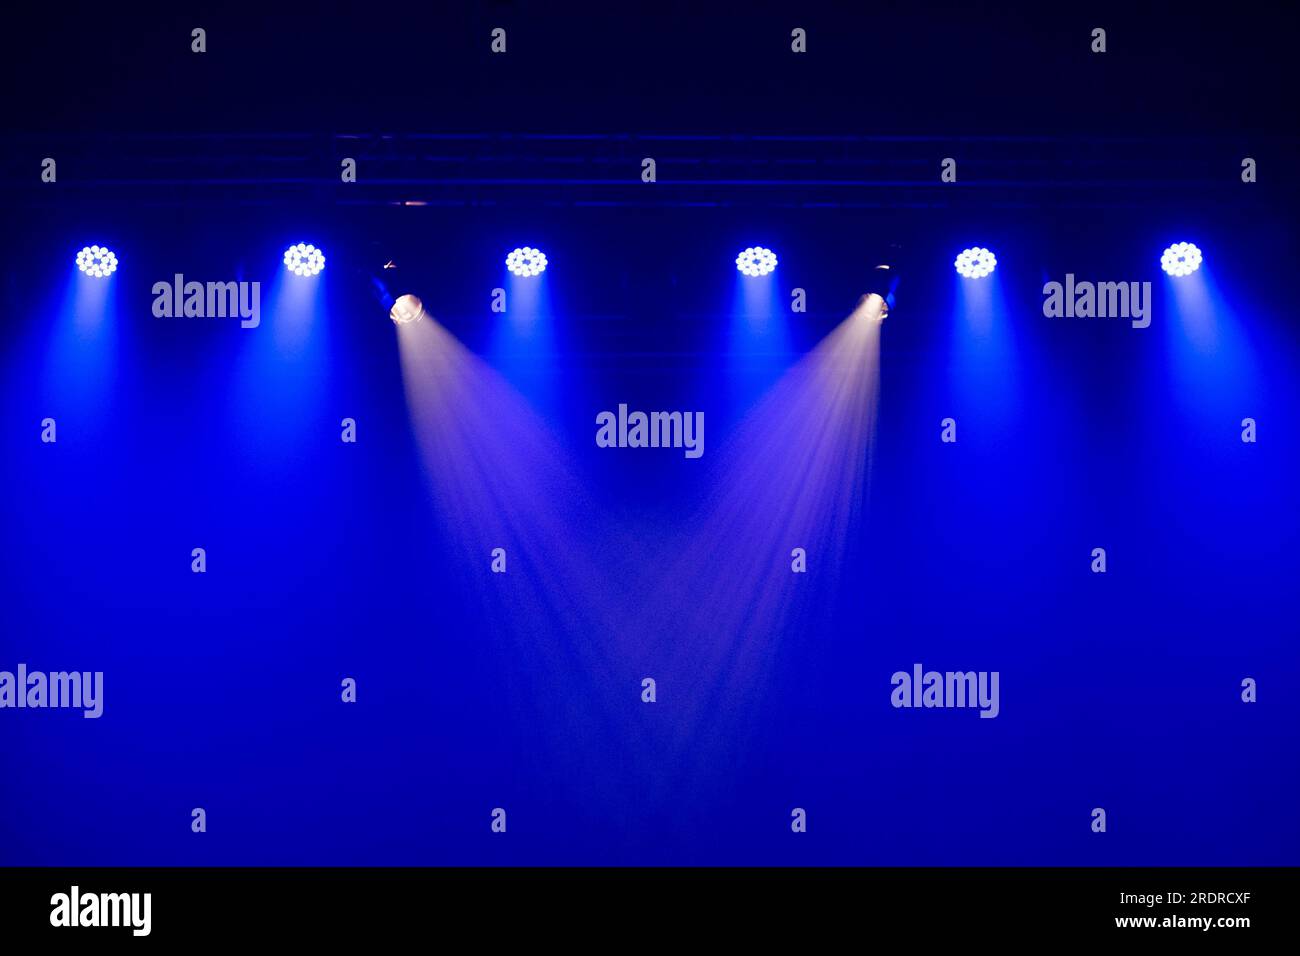 Catalao, Goias, Brasilien – 07. Juli 2023: Bühnenbeleuchtung in einem Theater. Beleuchtungseinrichtungen mit Lichtern in Blau und Weiß. Stockfoto